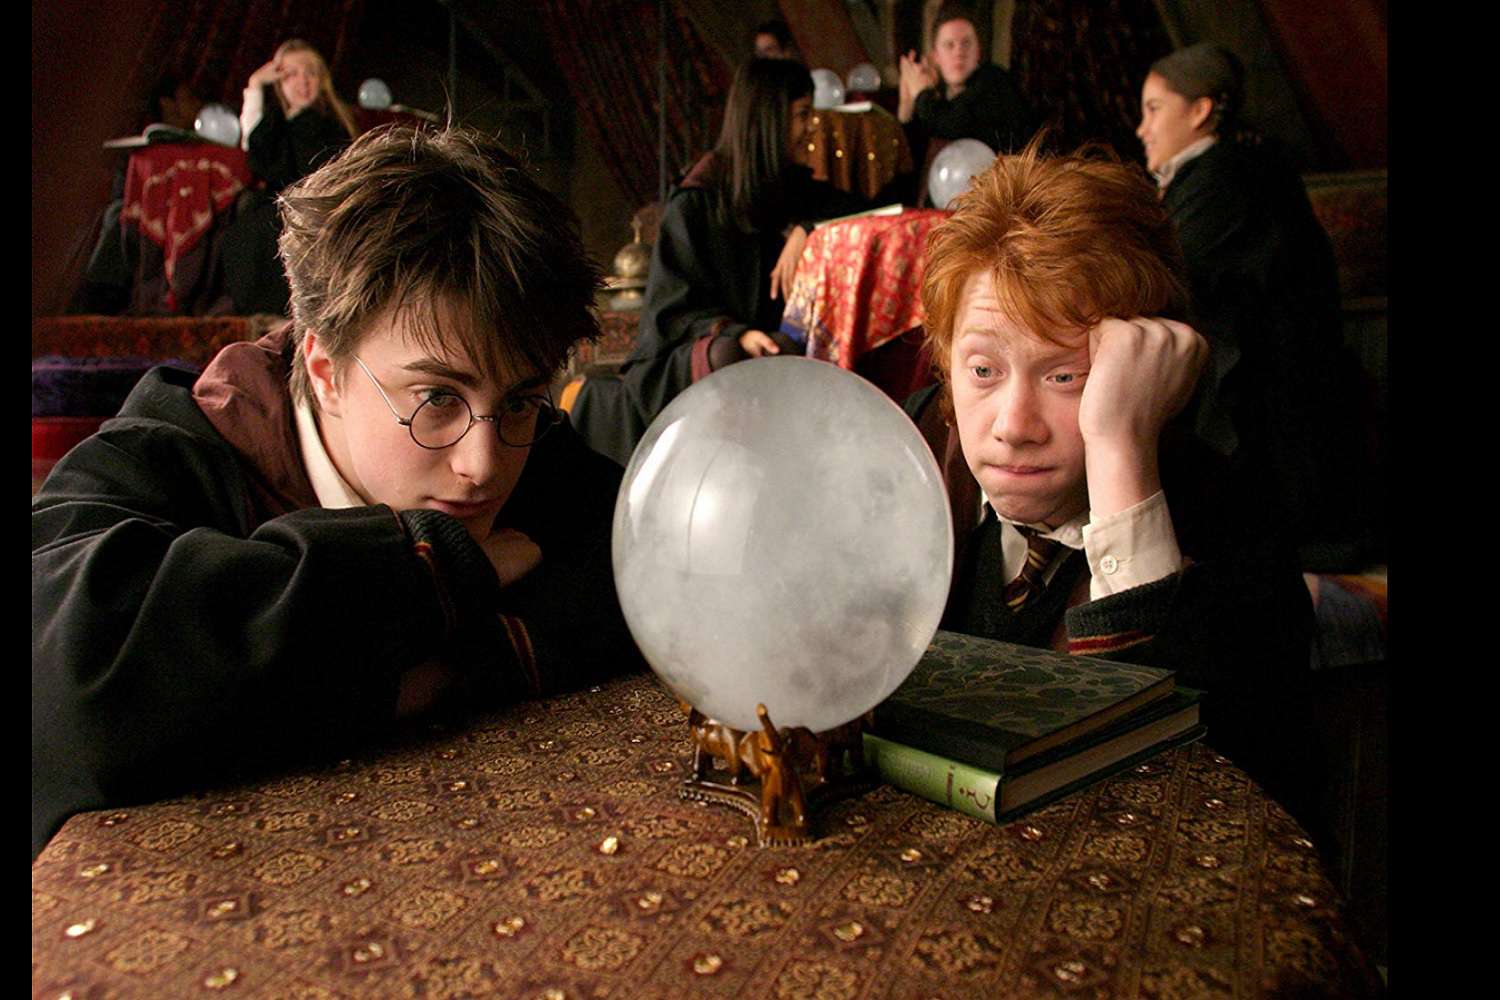 Een screenshot van een scène uit de film Harry Potter en de Gevangene van Azkaban.  De personages, Harry Potter en Ron Wemel, staren naar een kristallen bol.